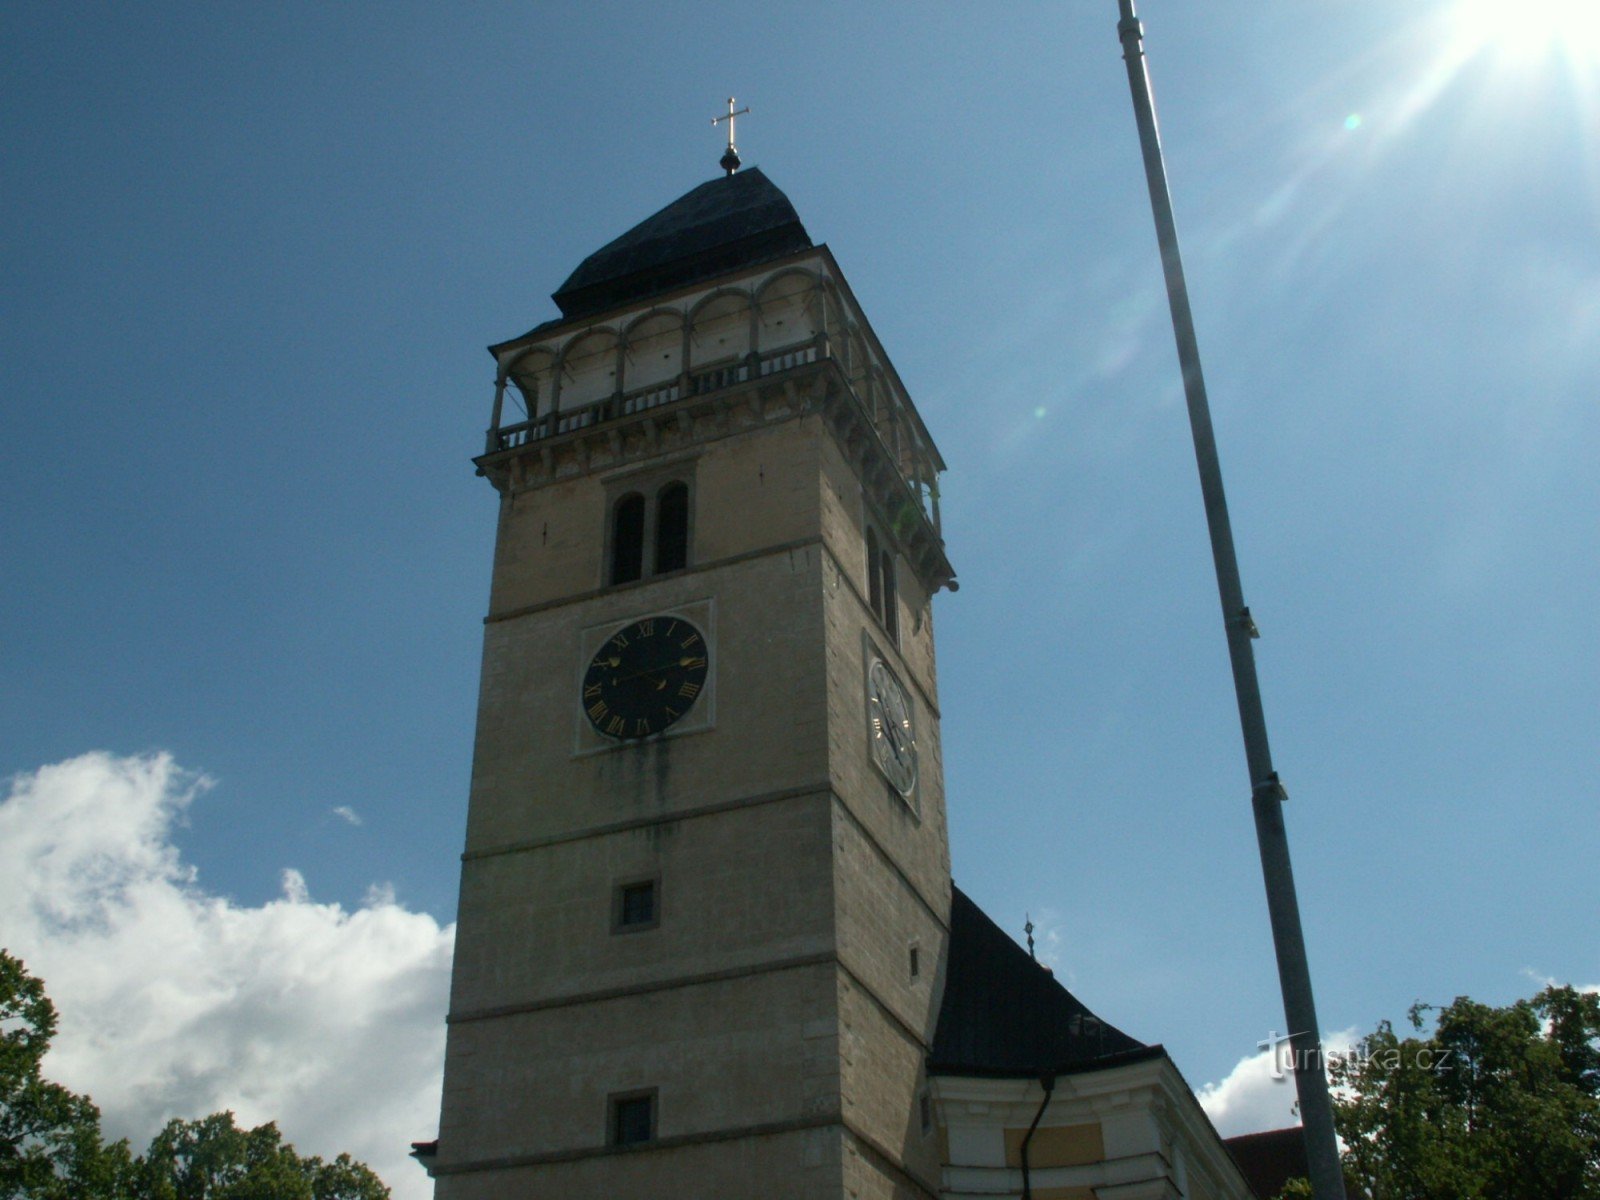 Tòa tháp tuyệt đẹp thời Phục hưng tại nhà thờ St. Lawrence ở Dačice. Sau khi leo 150 bậc thang tới